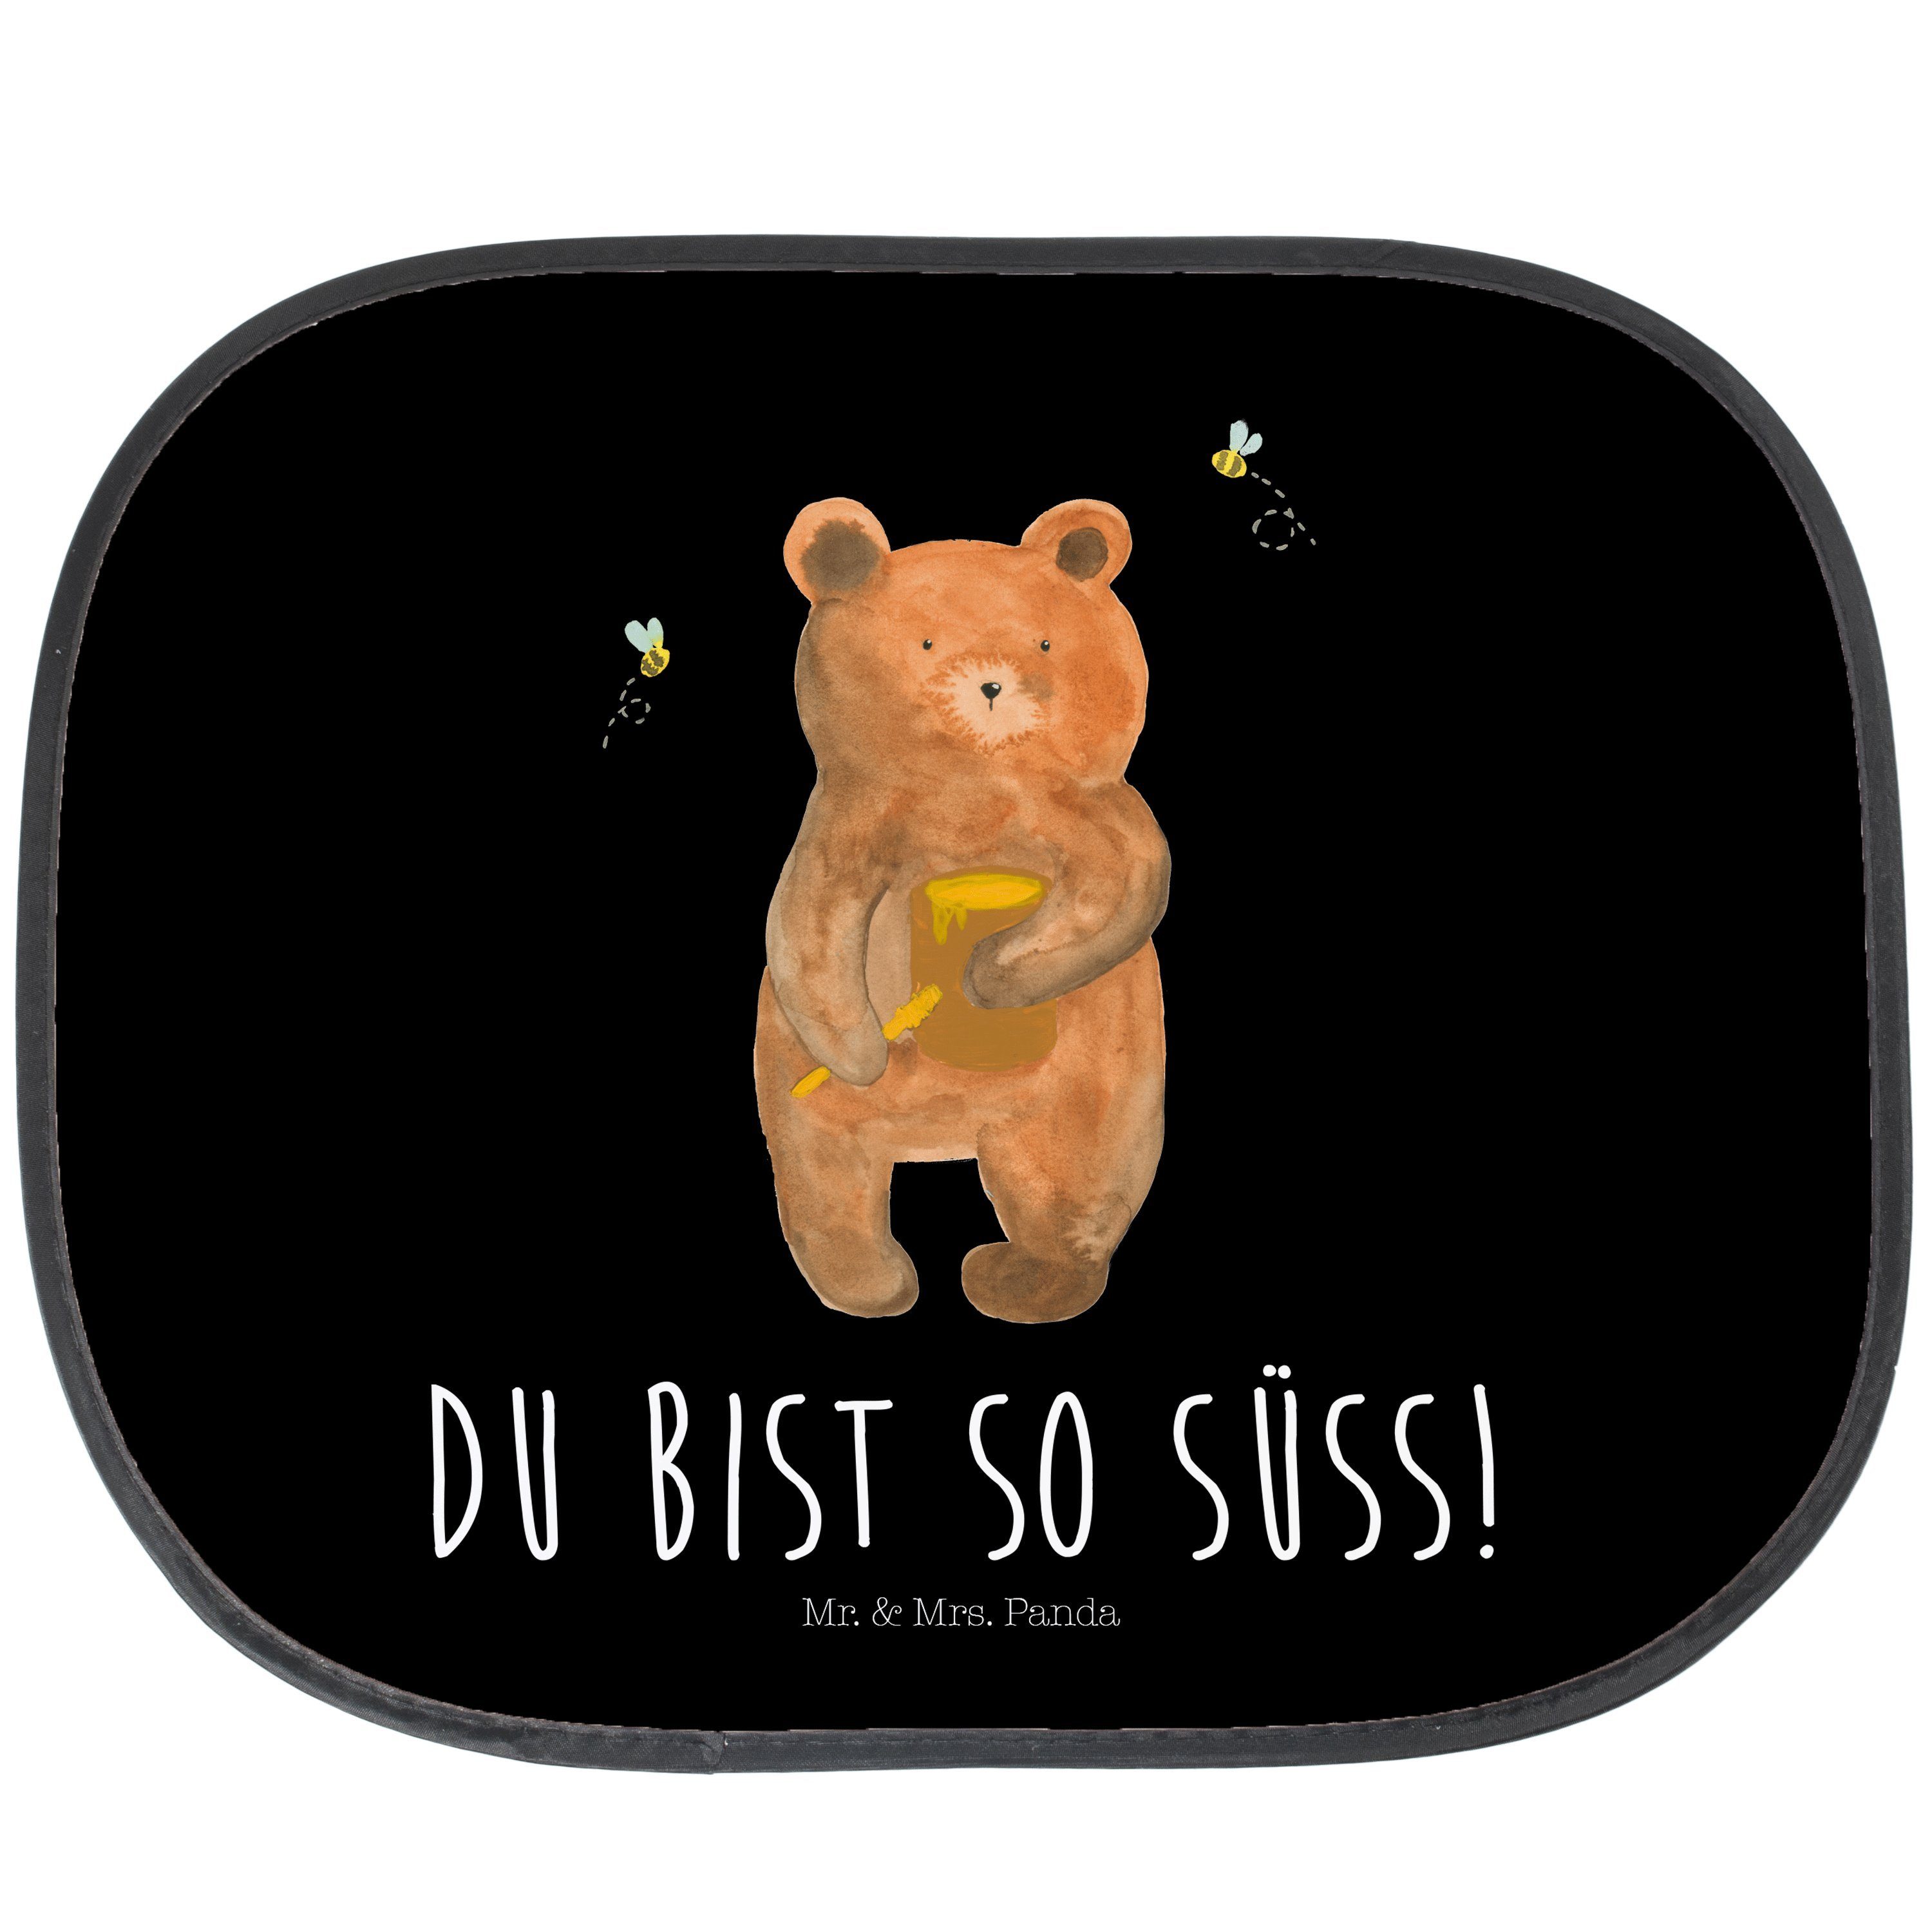 Sonnenschutz Honigbär - Schwarz - Geschenk, Teddy, Auto Sonnenschutz, Verliebte, S, Mr. & Mrs. Panda, Seidenmatt